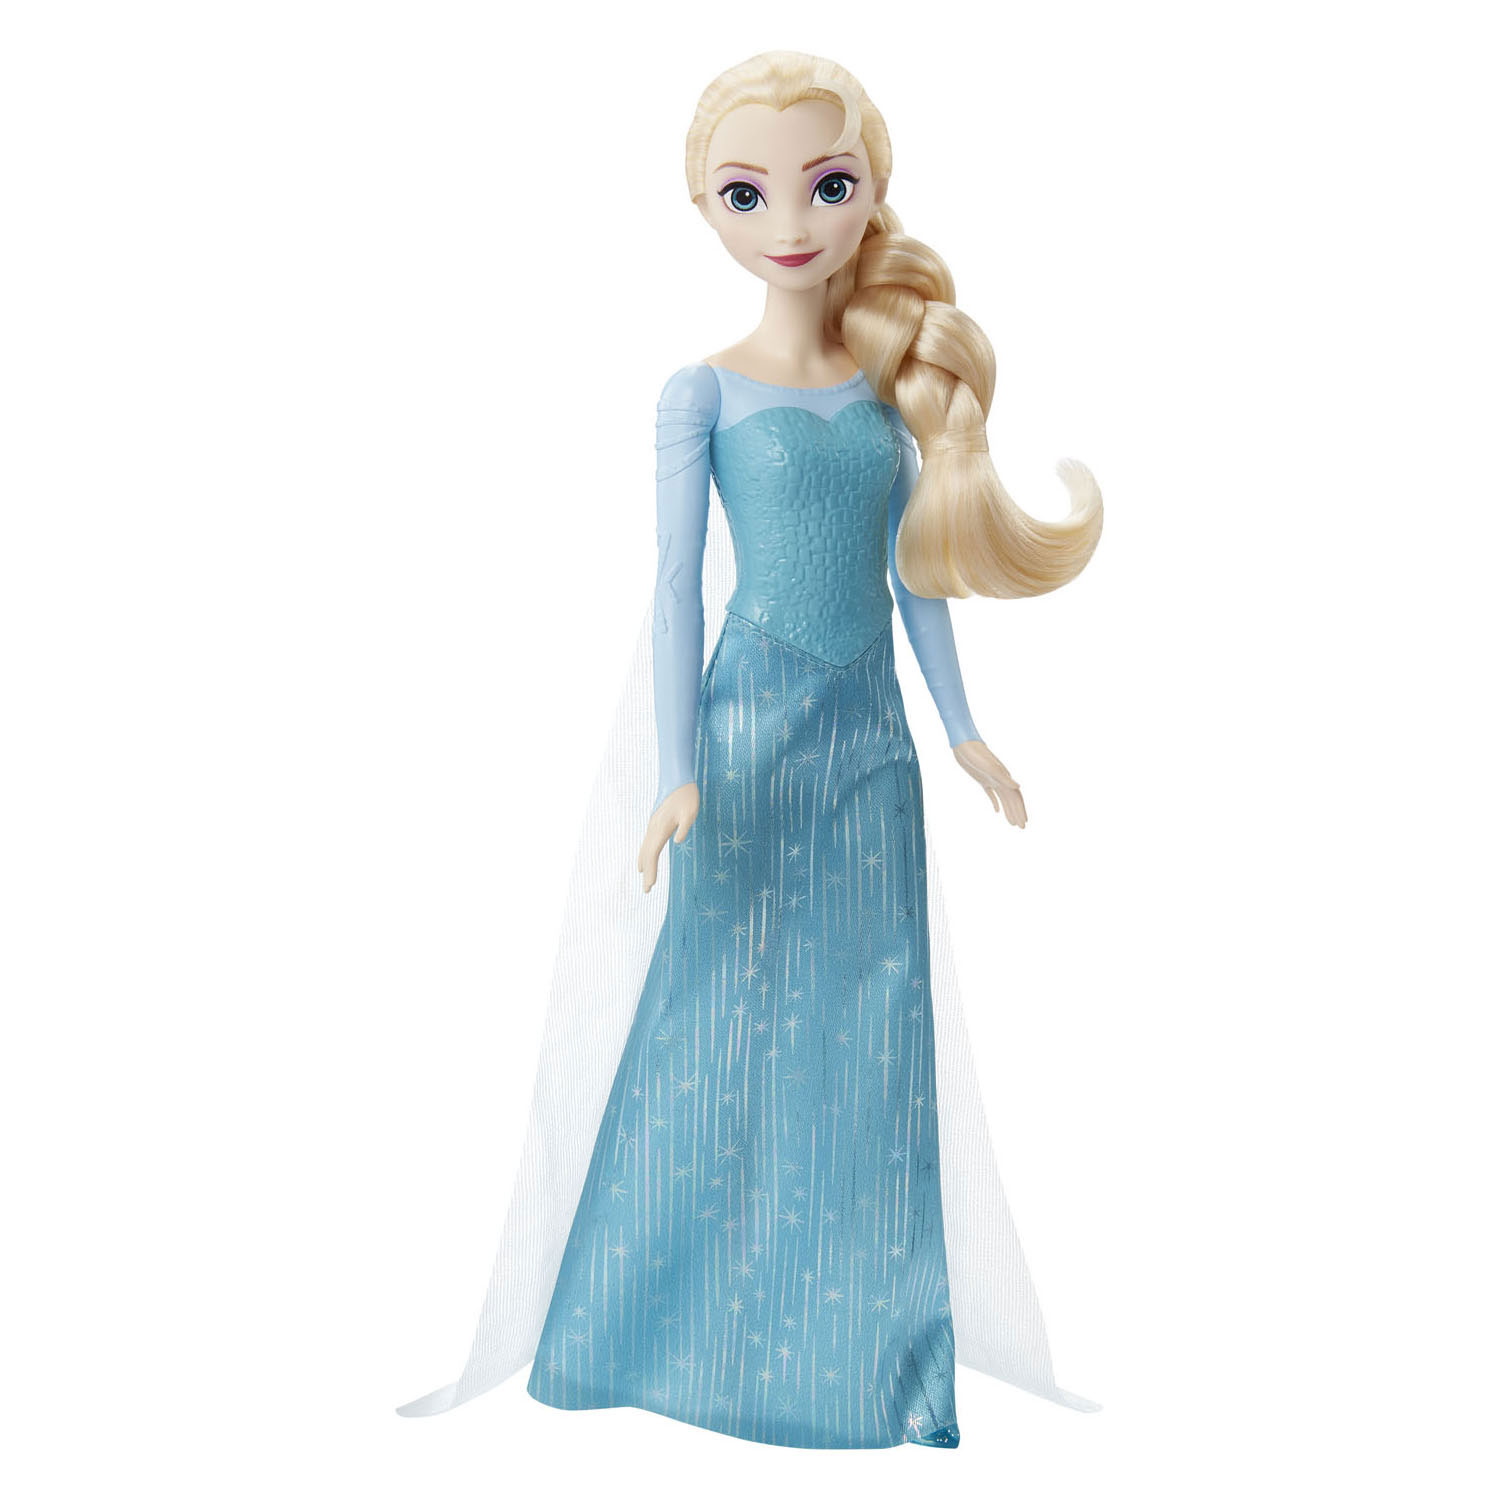 baden opschorten Politiebureau Disney Frozen Elsa Pop | Thimble Toys